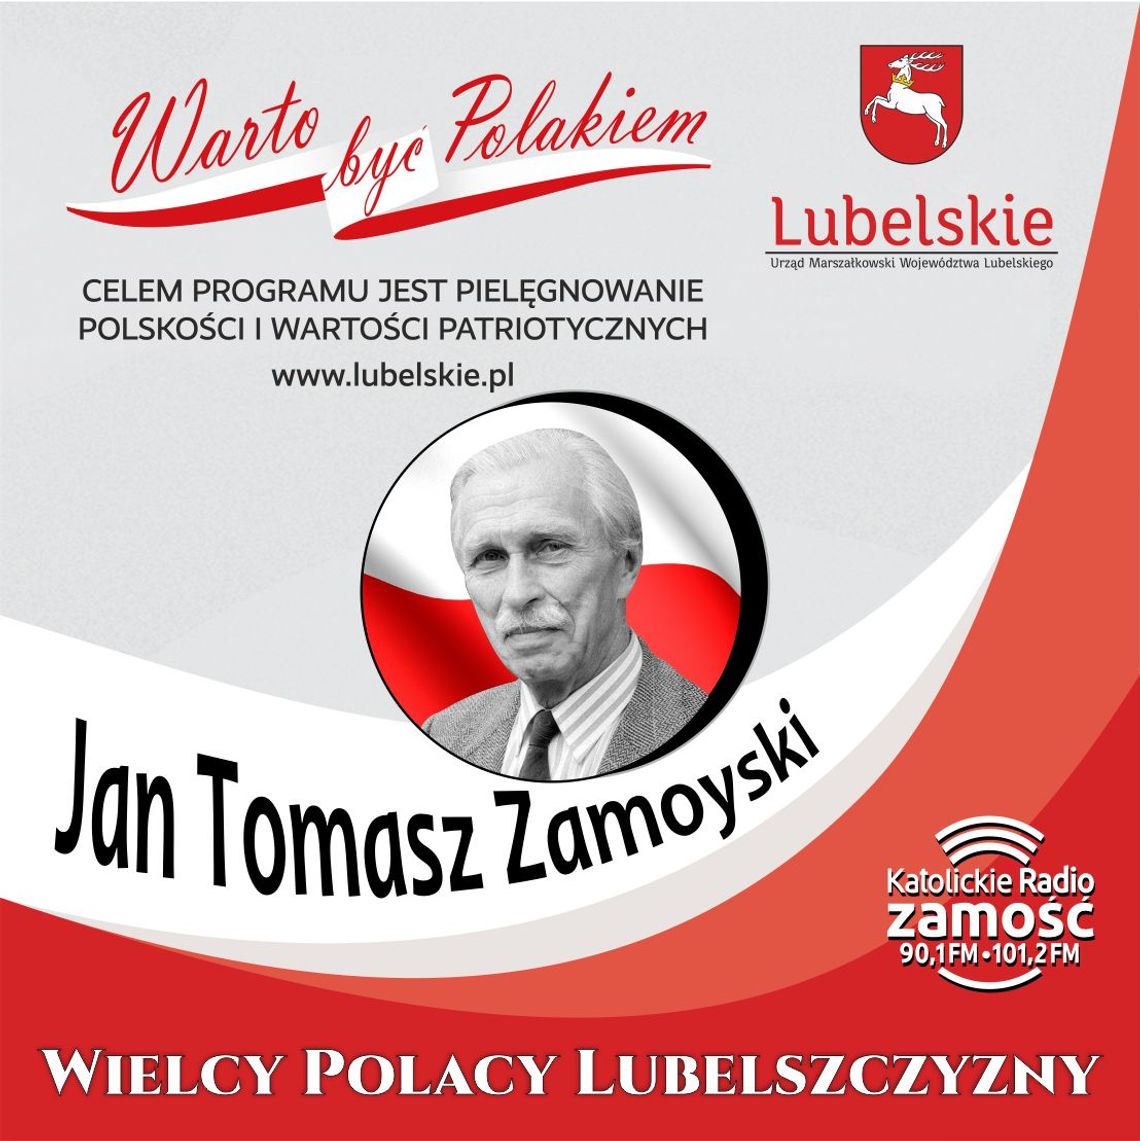 Wielcy Polacy Lubelszczyzny - edycja II